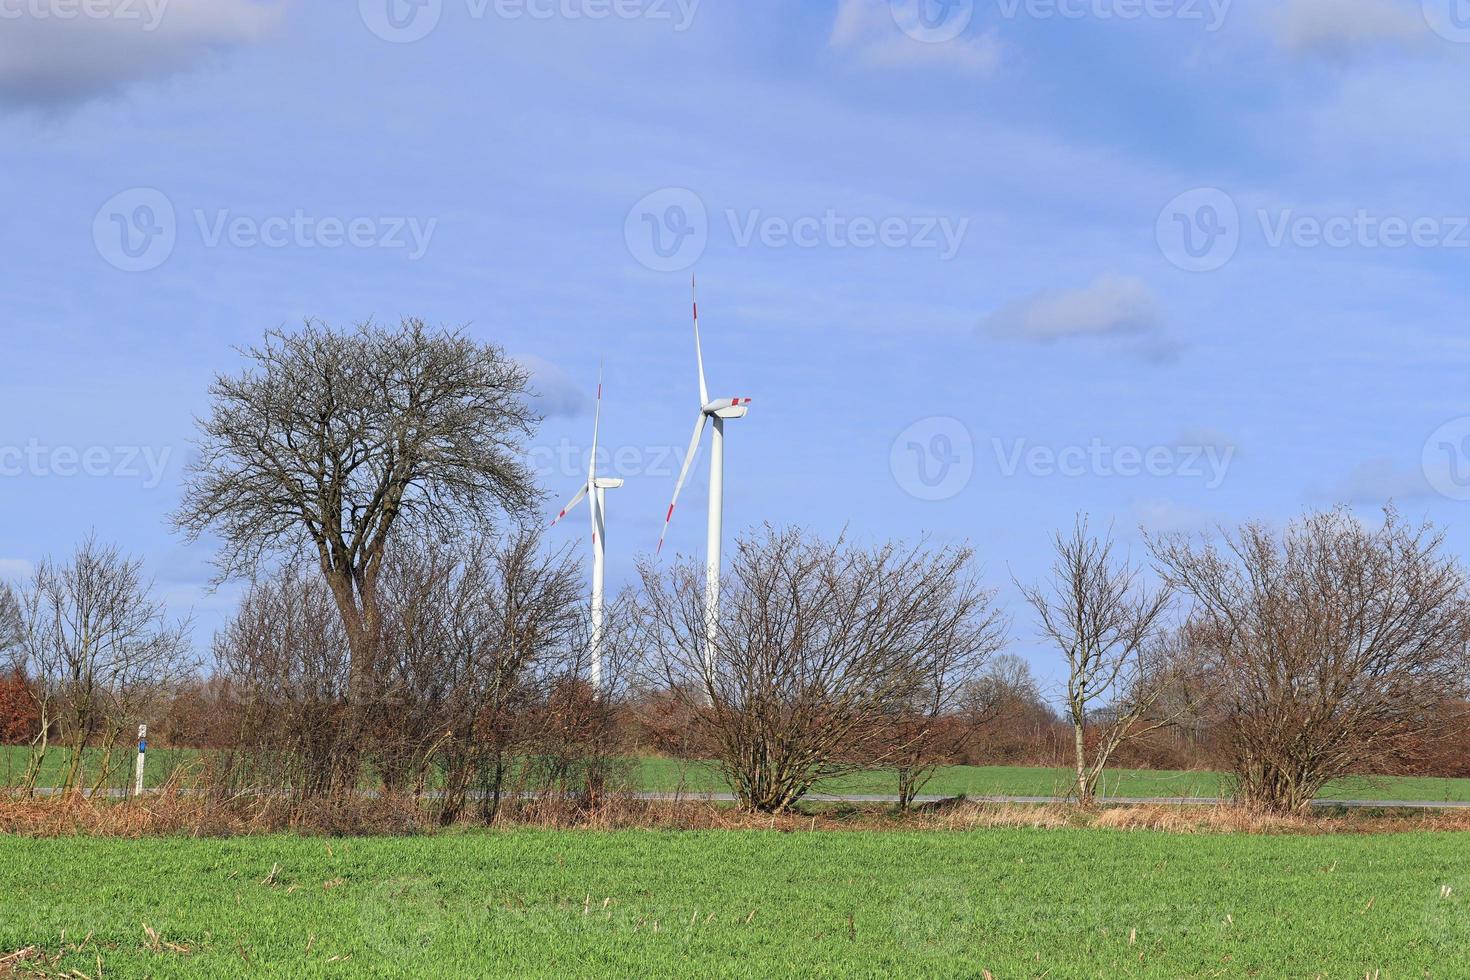 vista panorâmica sobre moinhos de vento de energia alternativa em um parque eólico no norte da europa foto